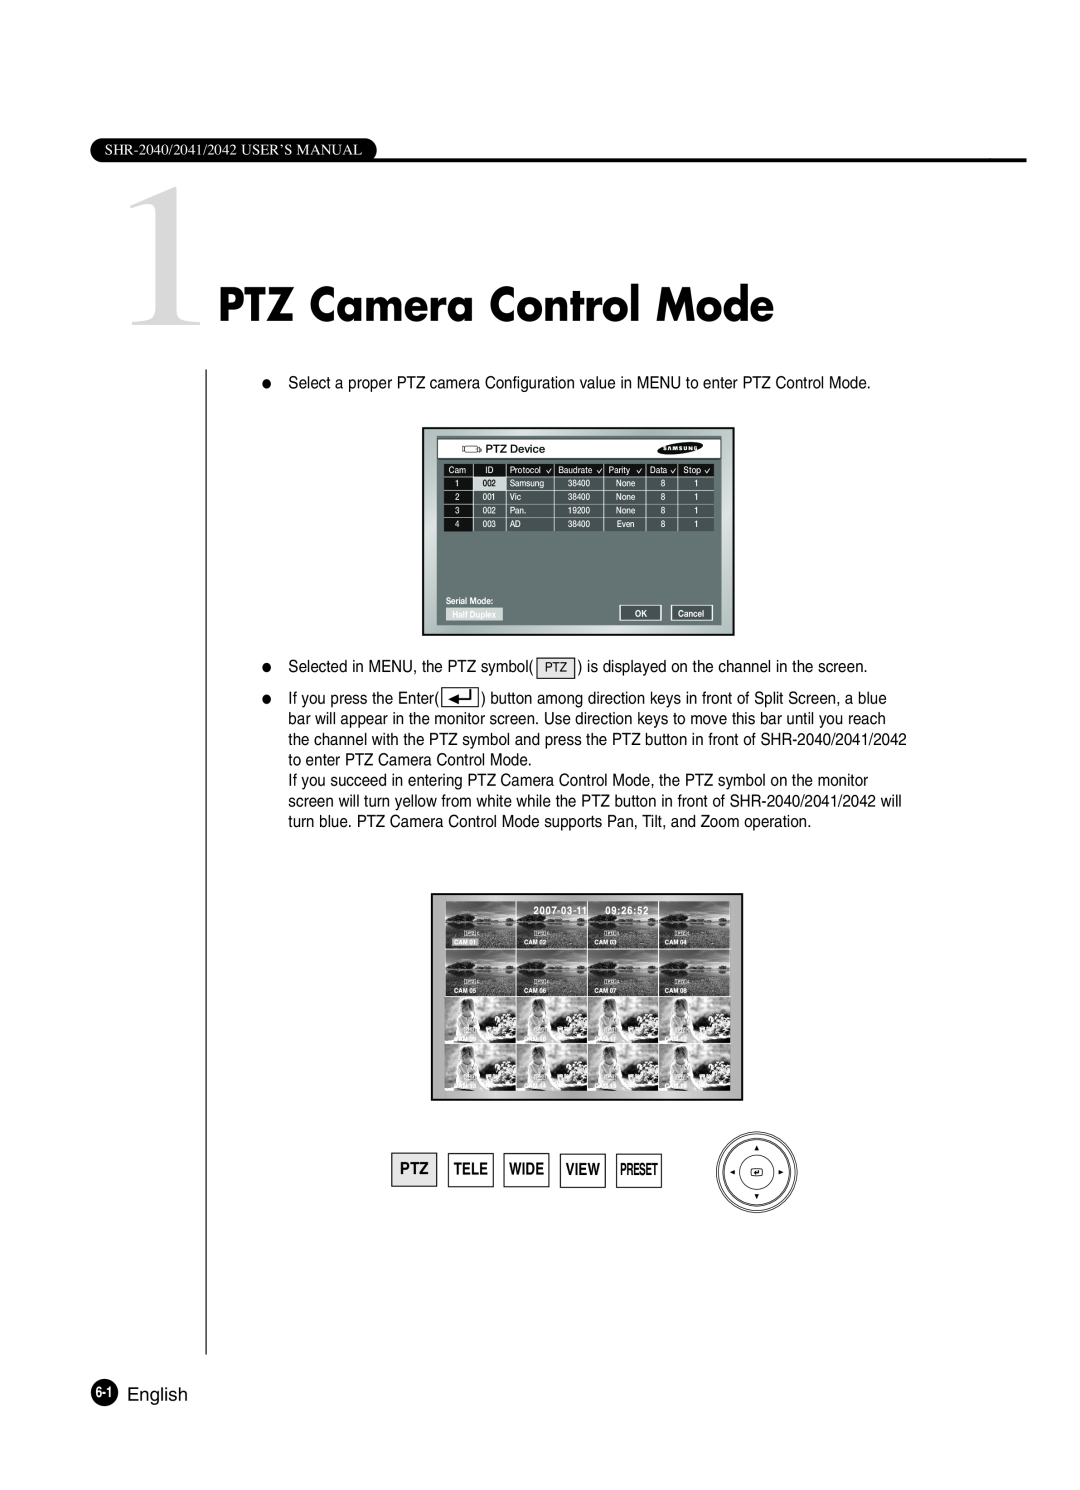 Samsung SHR-2042P250, SHR-2040P250 manual 1PTZ Camera Control Mode, English, Ptz Tele Wide View Preset 